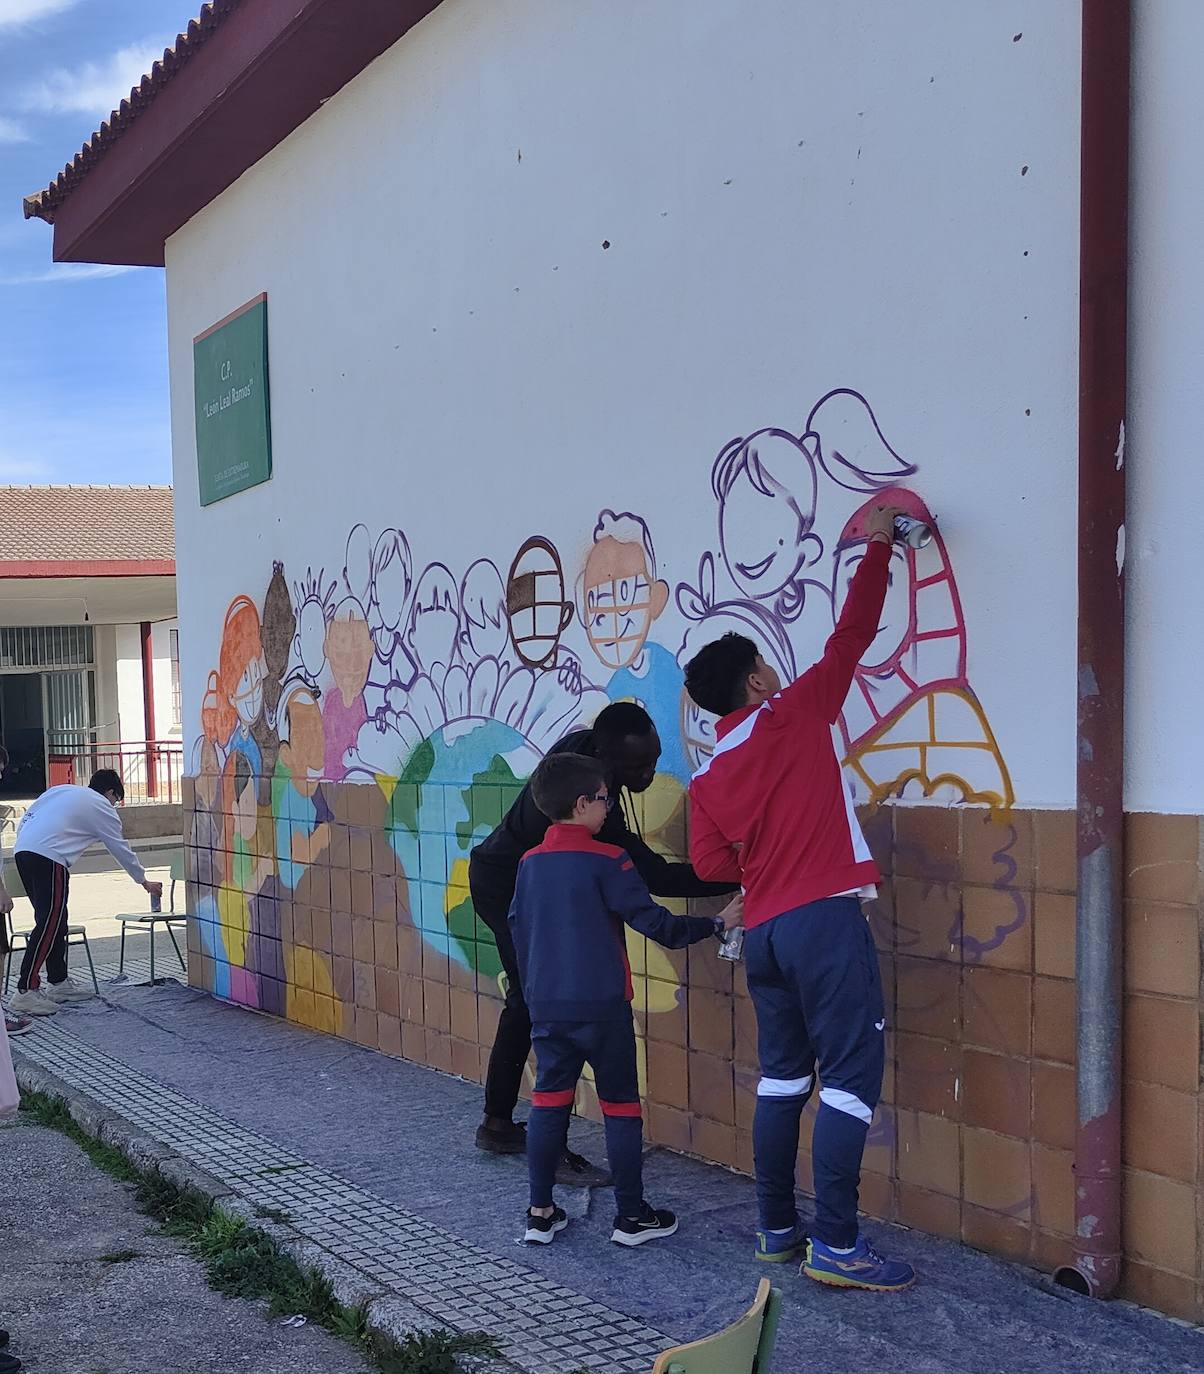 Imagen secundaria 2 - Alumnos y profesores del colegio pintan un gran mural contra el racismo y la xenofobia